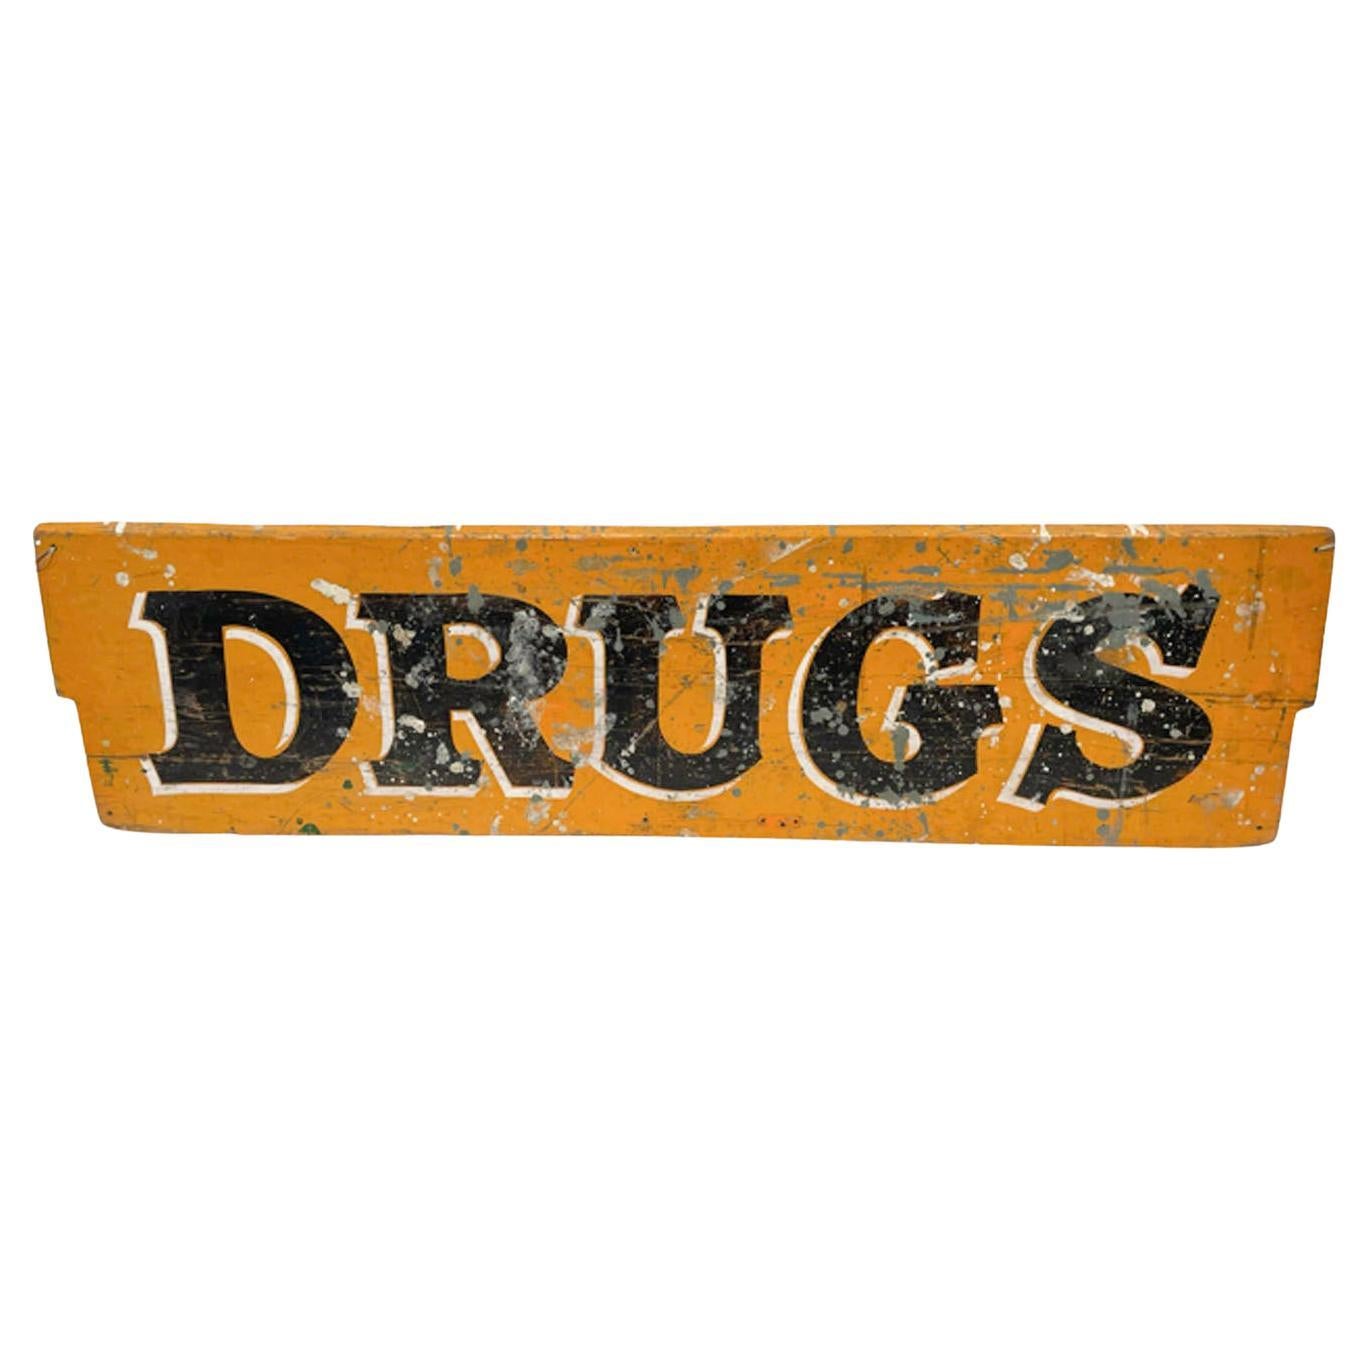 Pharmacy-Schild „DRUGS“ aus dem frühen 20. Jahrhundert, bemalt auf einem einzigen Karton